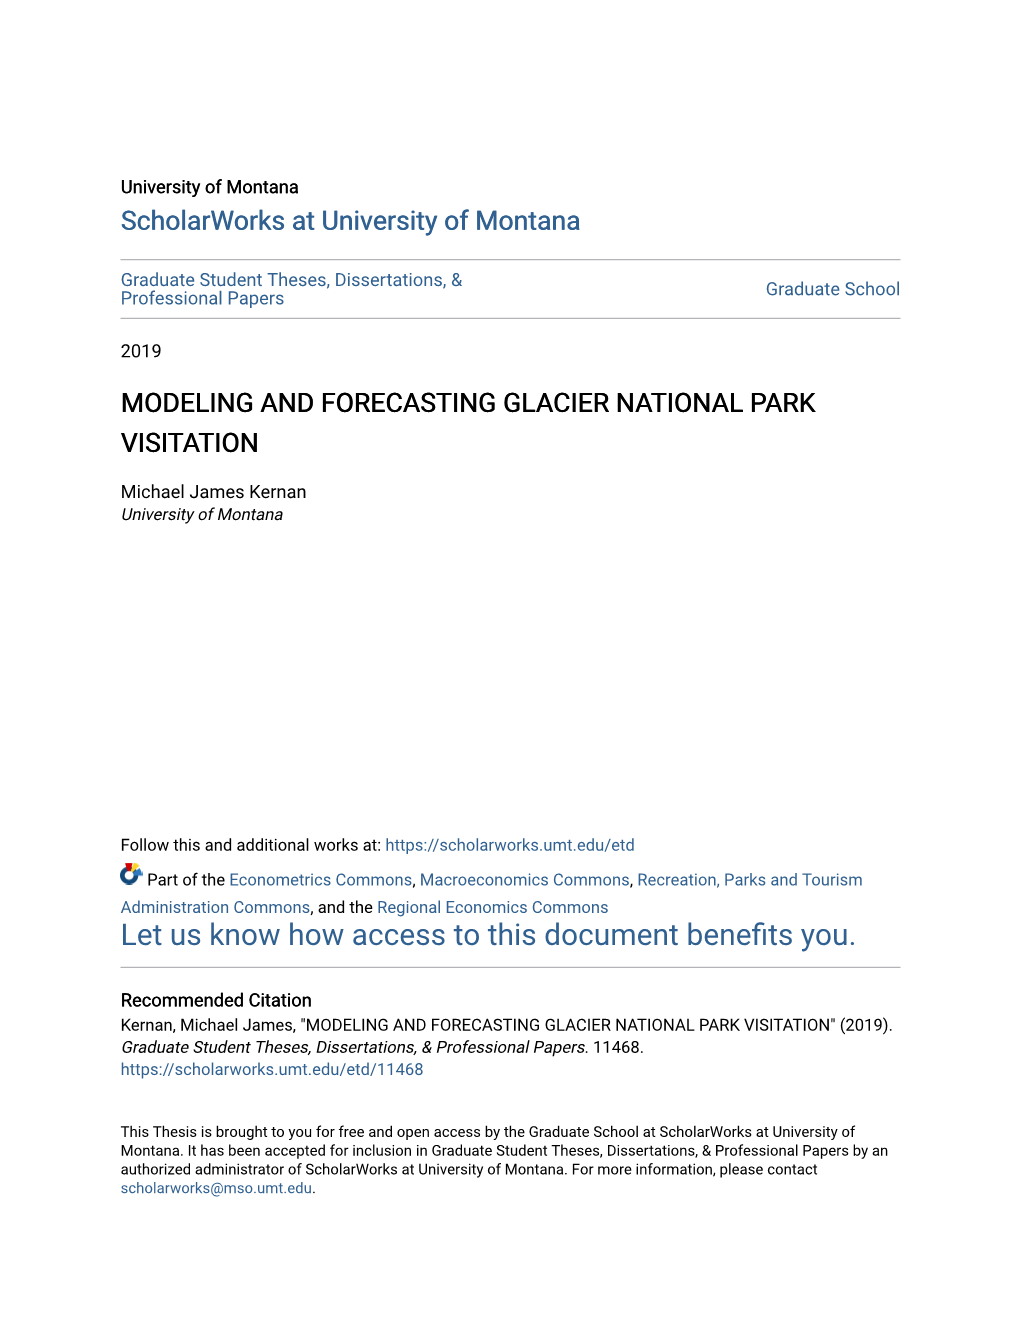 Modeling and Forecasting Glacier National Park Visitation